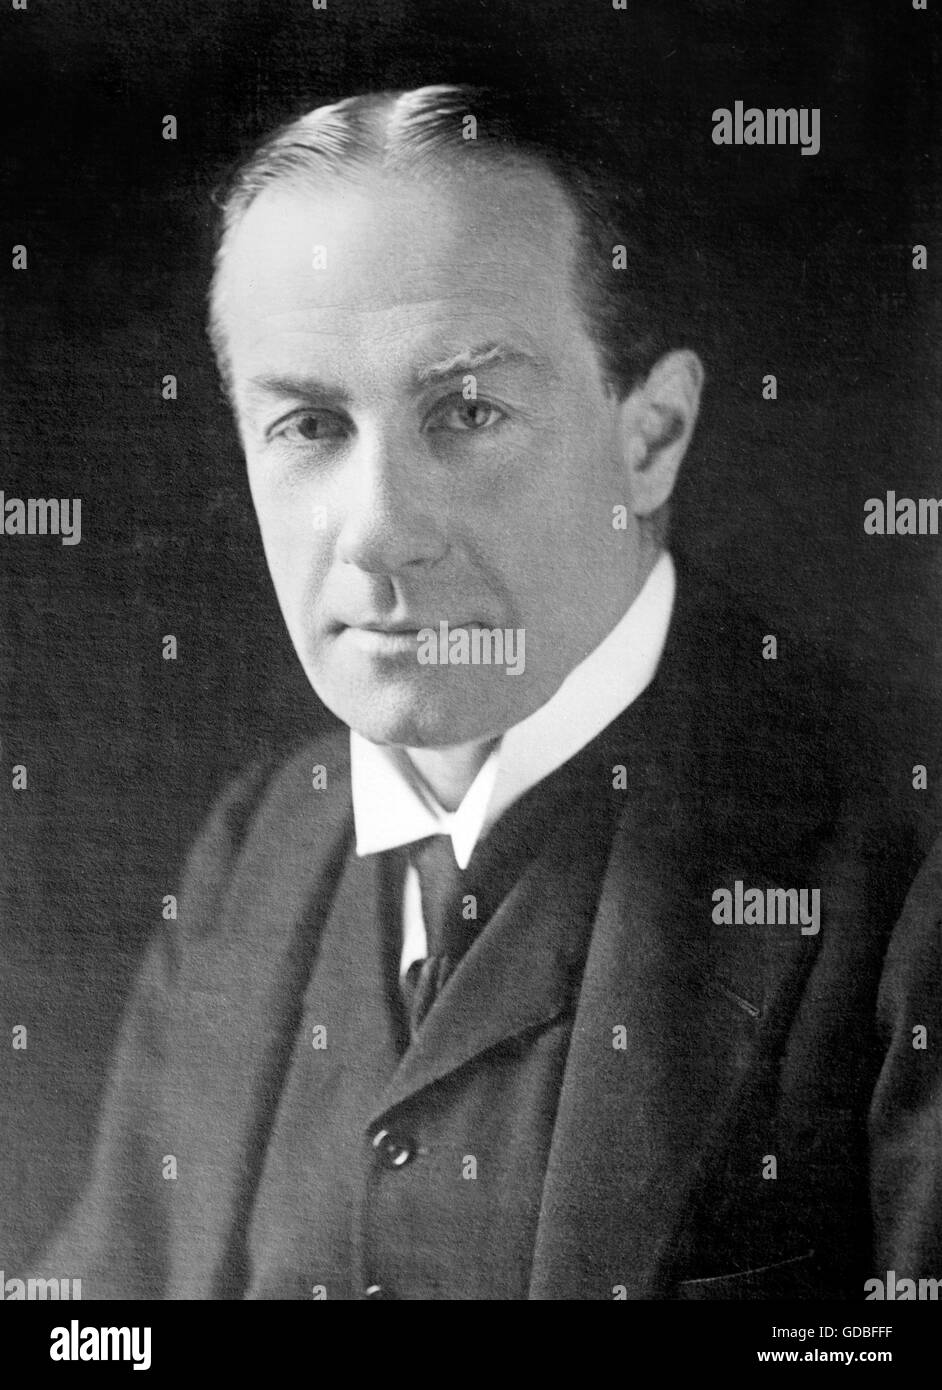 Stanley Baldwin. Portrait von Stanley Baldwin, 1. Earl Baldwin of Bewdley (1867-1947), ein britischer konservativer Politiker, der dreimal als Premierminister diente. Foto von Bain News Service Stockfoto